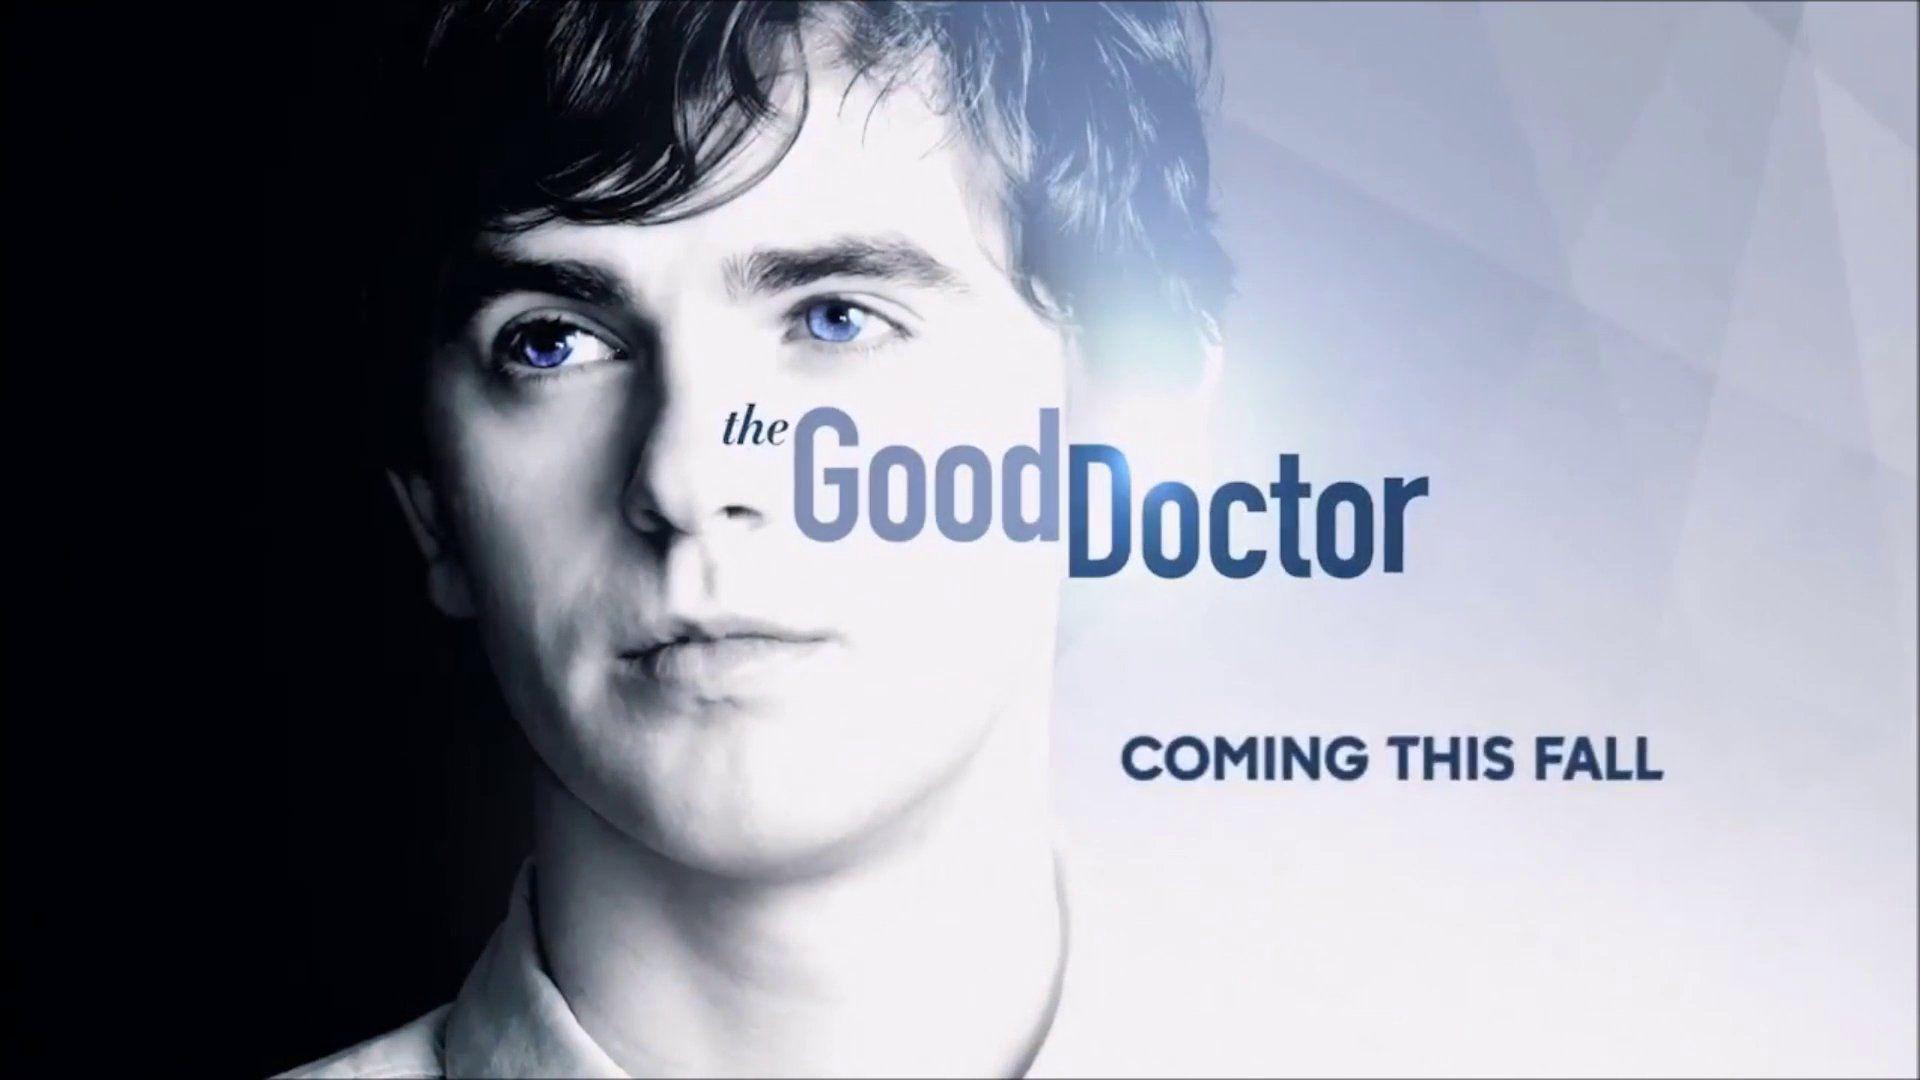 The Good Doctor Season 1 Episode 1